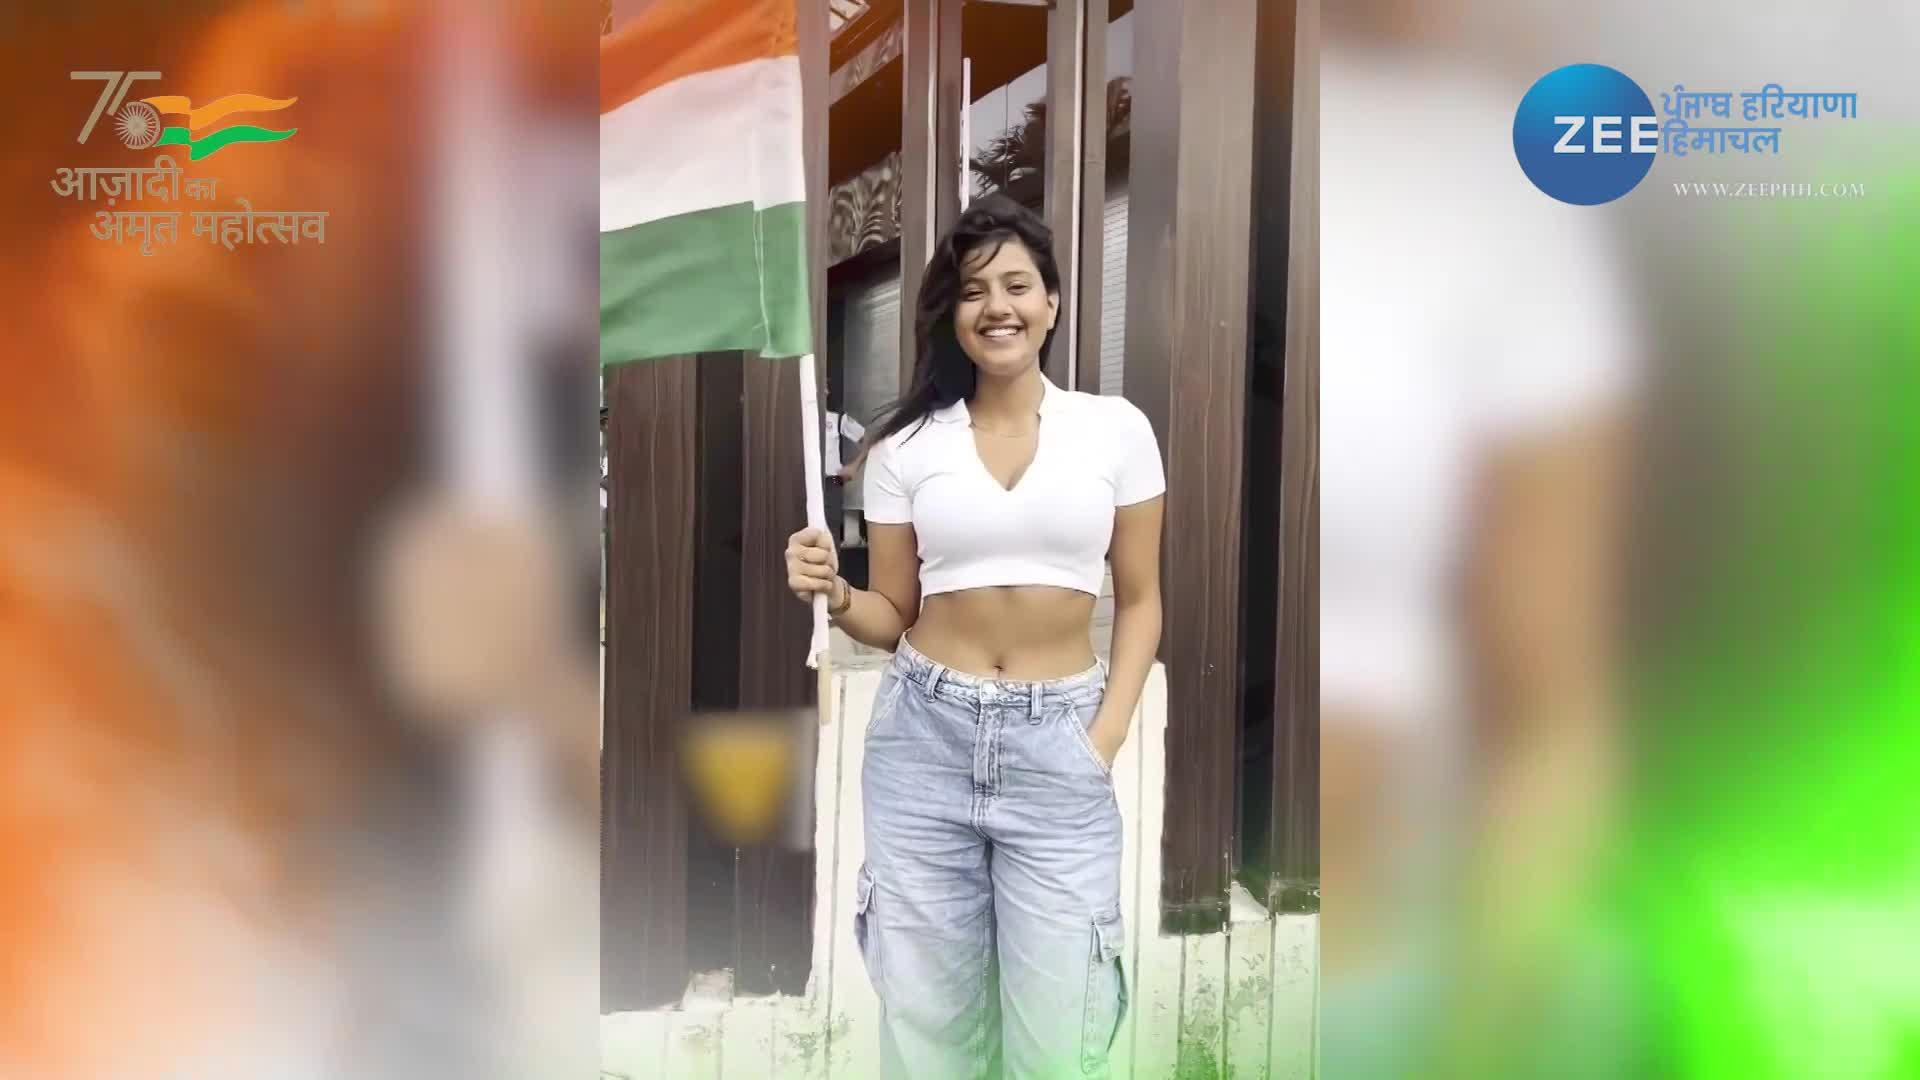 Anjali Sex Hd Photos - Anjali Arora new video viral with flag after mms watch full video plrh |  anjali arora video: à¤…à¤‚à¤œà¤²à¤¿ à¤…à¤°à¥‹à¤¡à¤¼à¤¾ à¤•à¤¾ à¤à¤• à¤”à¤° à¤µà¥€à¤¡à¤¿à¤¯à¥‹ à¤¹à¥‹ à¤°à¤¹à¤¾ à¤µà¤¾à¤¯à¤°à¤², à¤¯à¥‚à¤œà¤°à¥à¤¸ à¤•à¤°  à¤œà¤®à¤•à¤° à¤Ÿà¥à¤°à¥‹